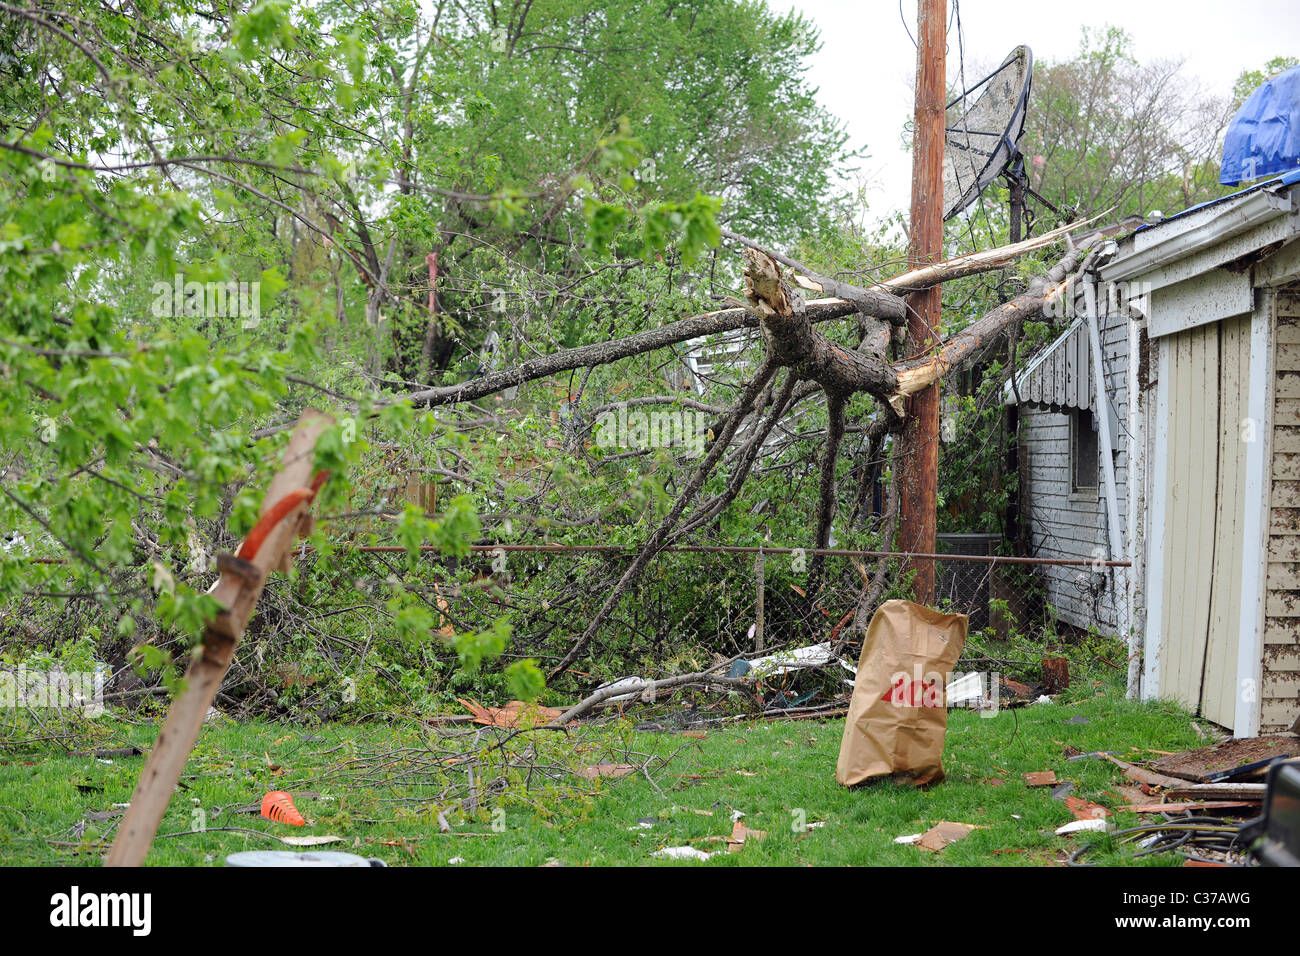 SAINT LOUIS, MISSOURI - 23 de abril: viviendas con techos cubiertos de lona después de tornados golpeó el Maryland Heights el viernes Foto de stock